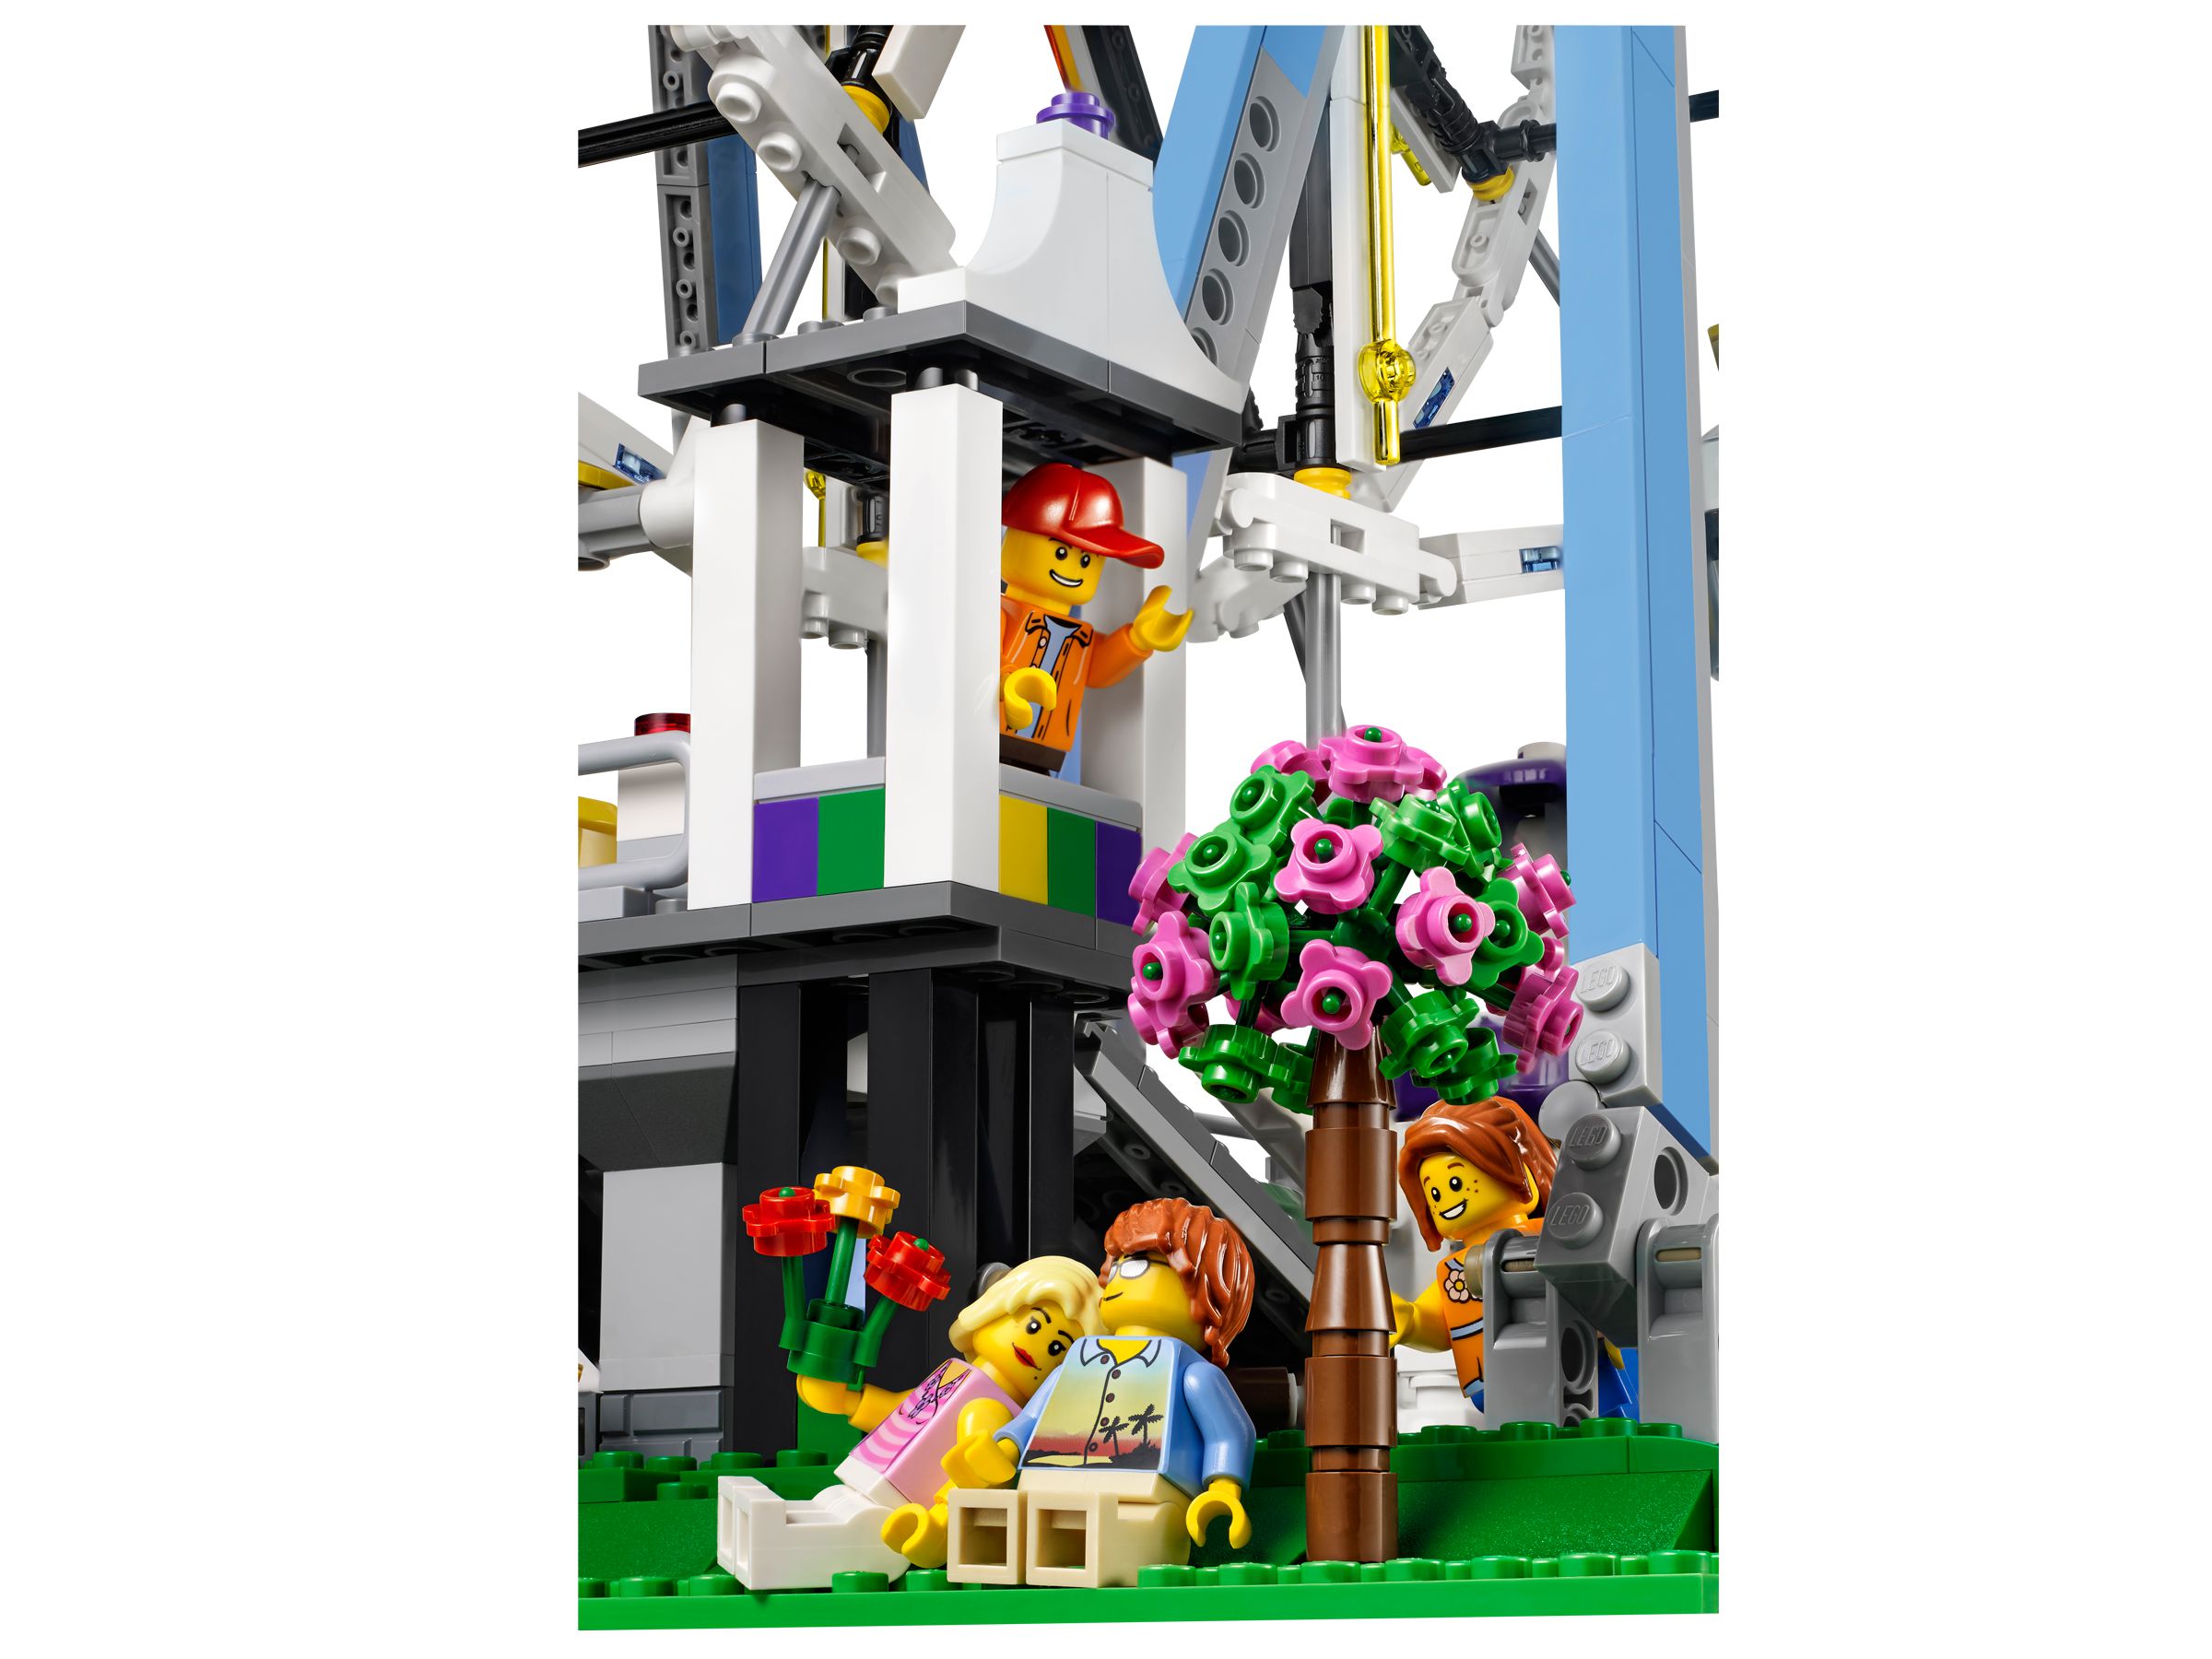 LEGO Advanced Models 10247 Riesenrad (Ferris Wheel) LEGO_10247_alt4.jpg